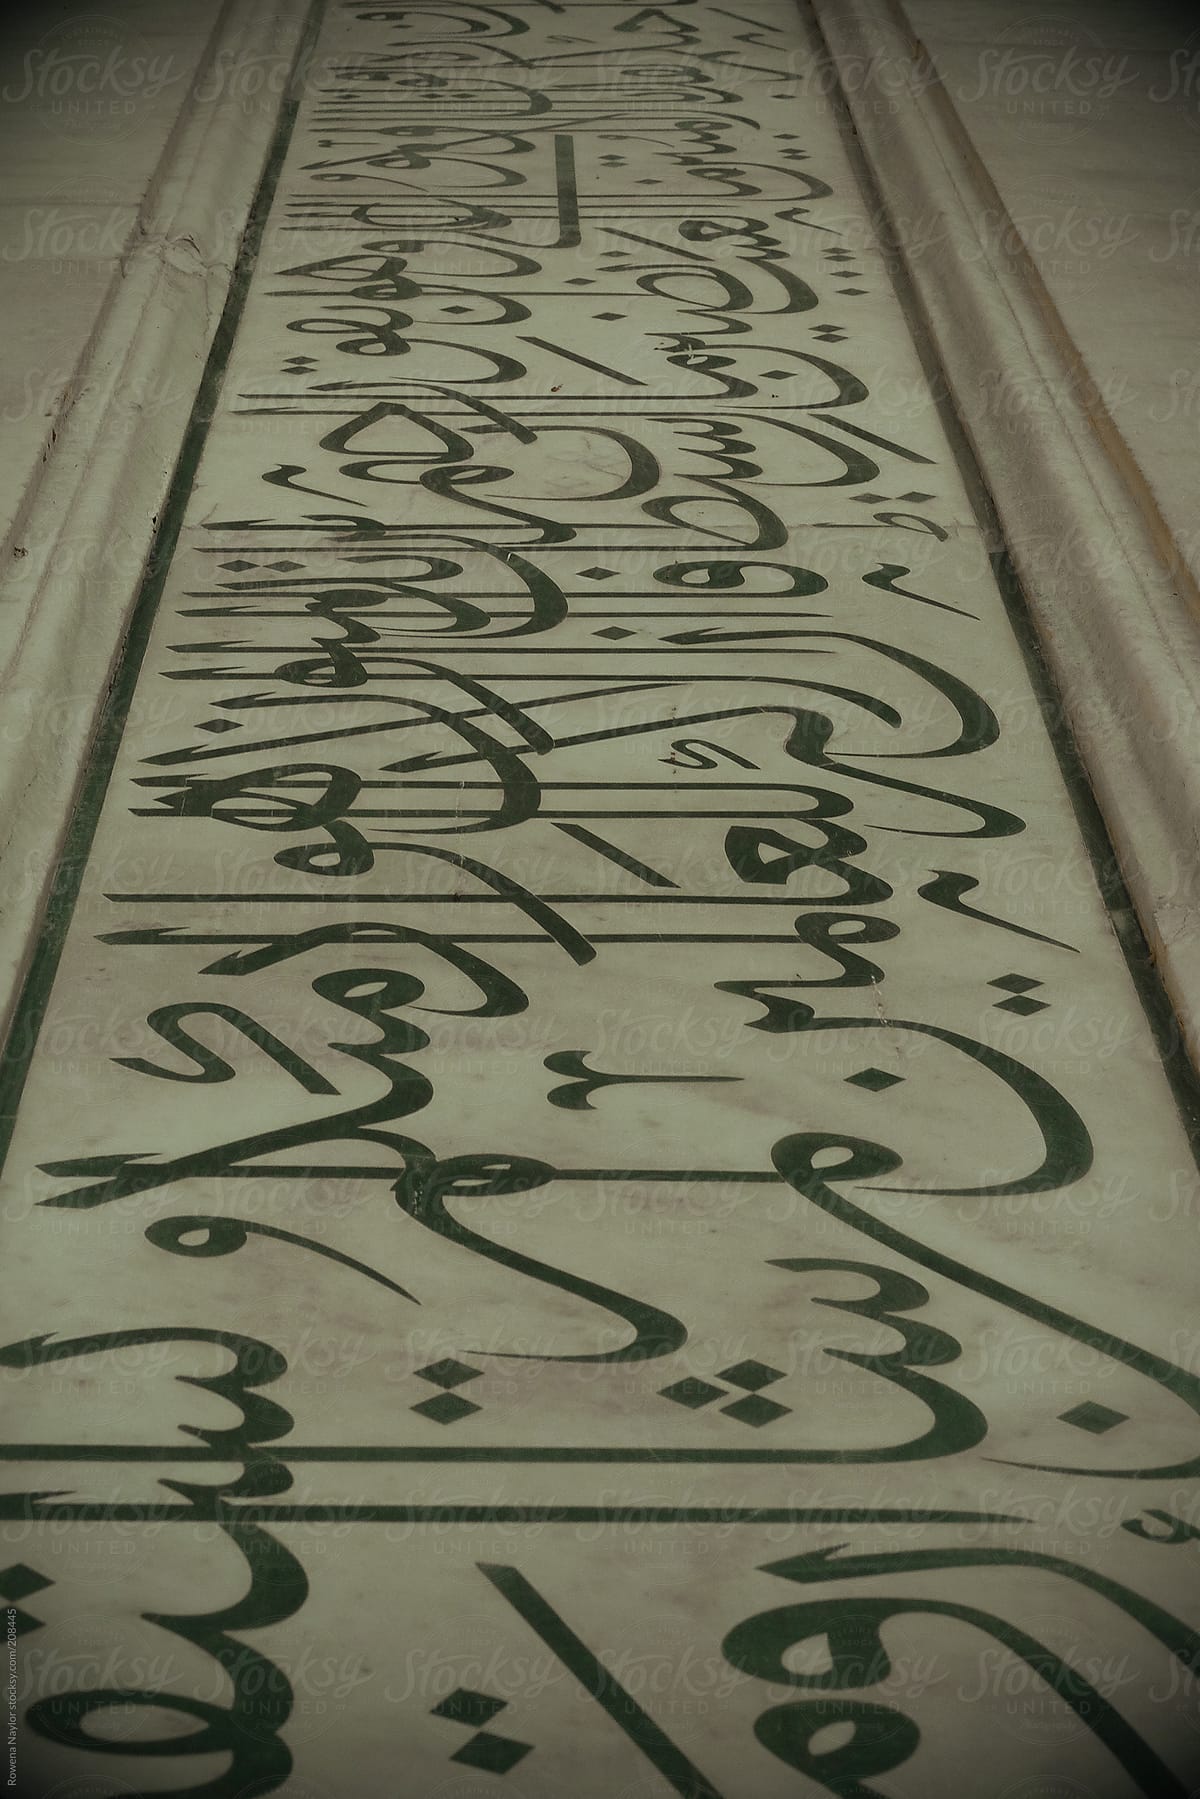 Arabic text on walls of Taj Mahal